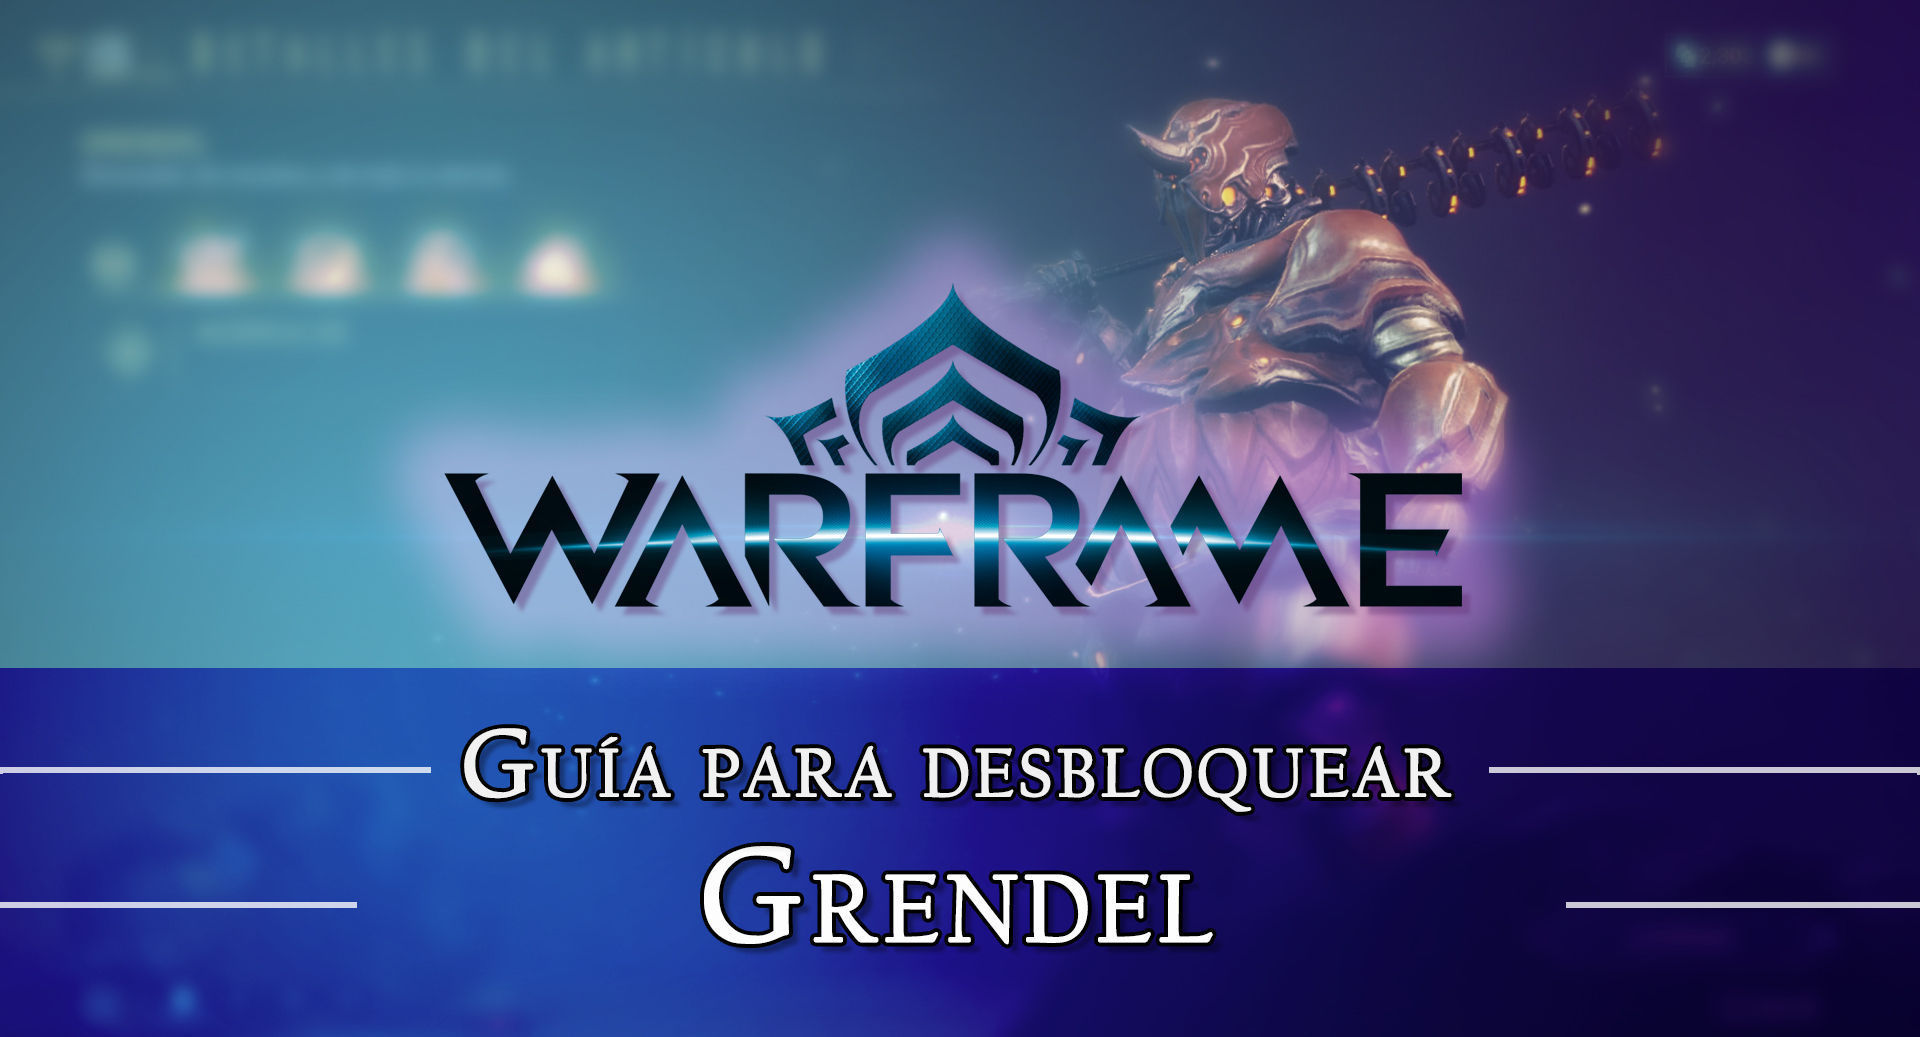 Warframe Grendel: cmo conseguirlo, planos, requisitos y estadsticas - Warframe